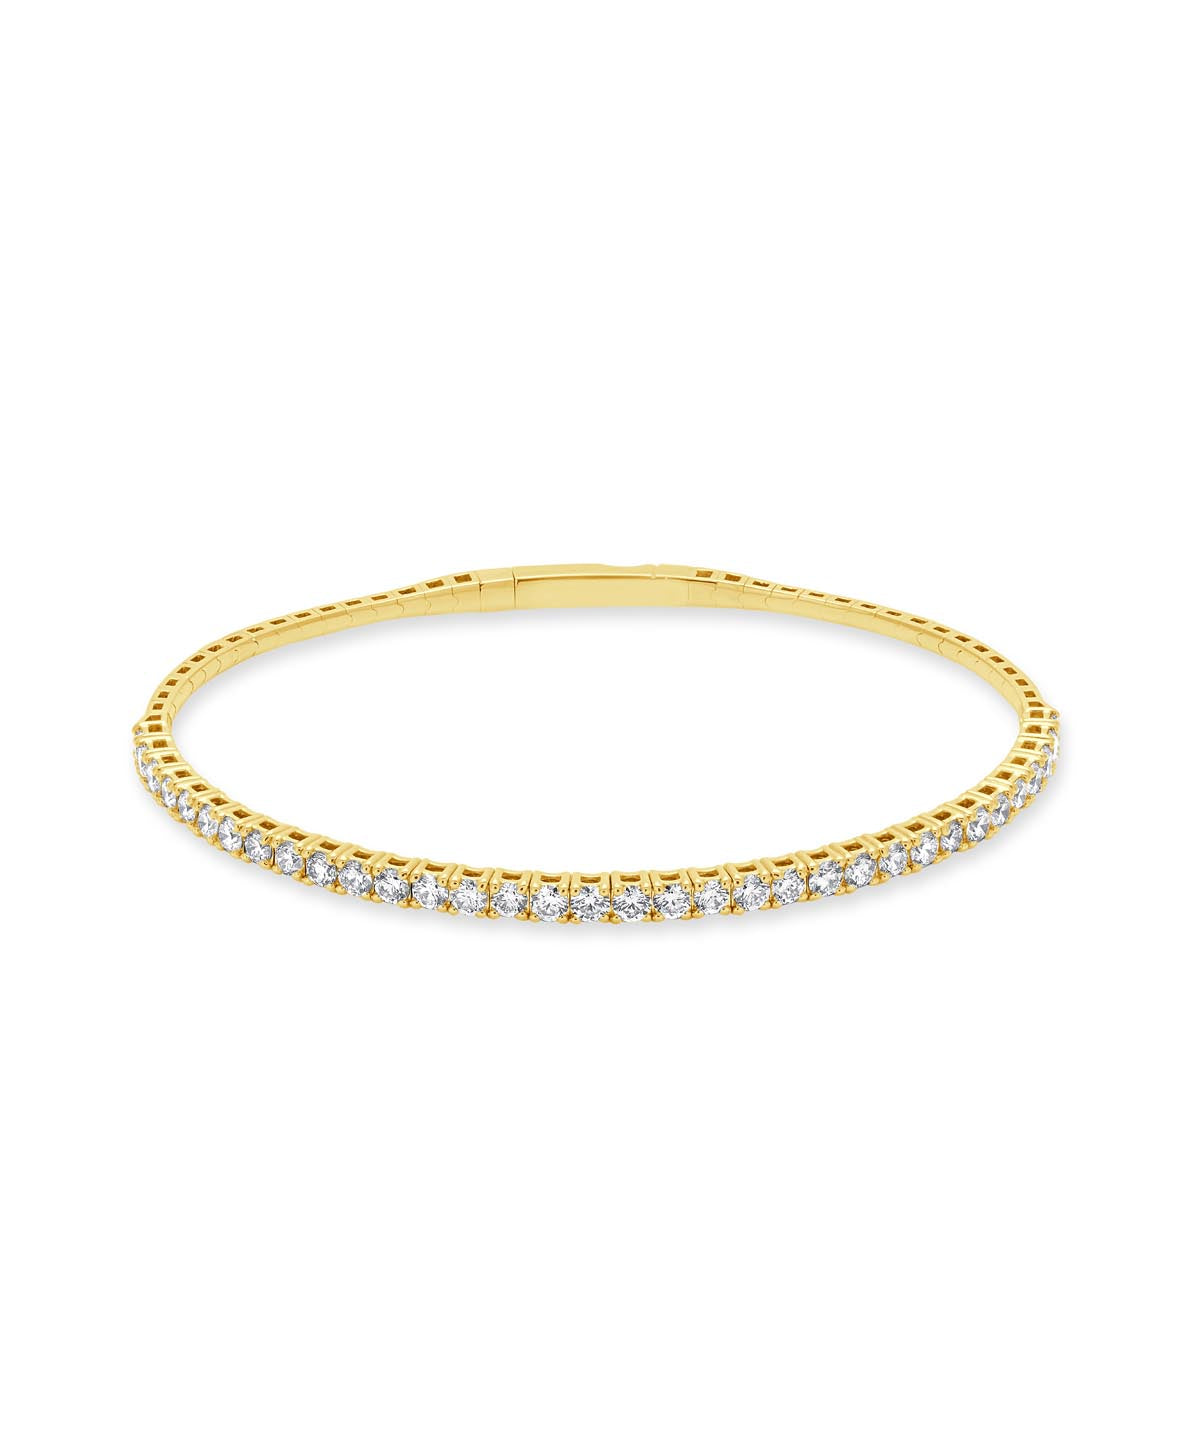 14K Yellow Gold Diamond Flexible Bangle Bracelet 2.01cttw